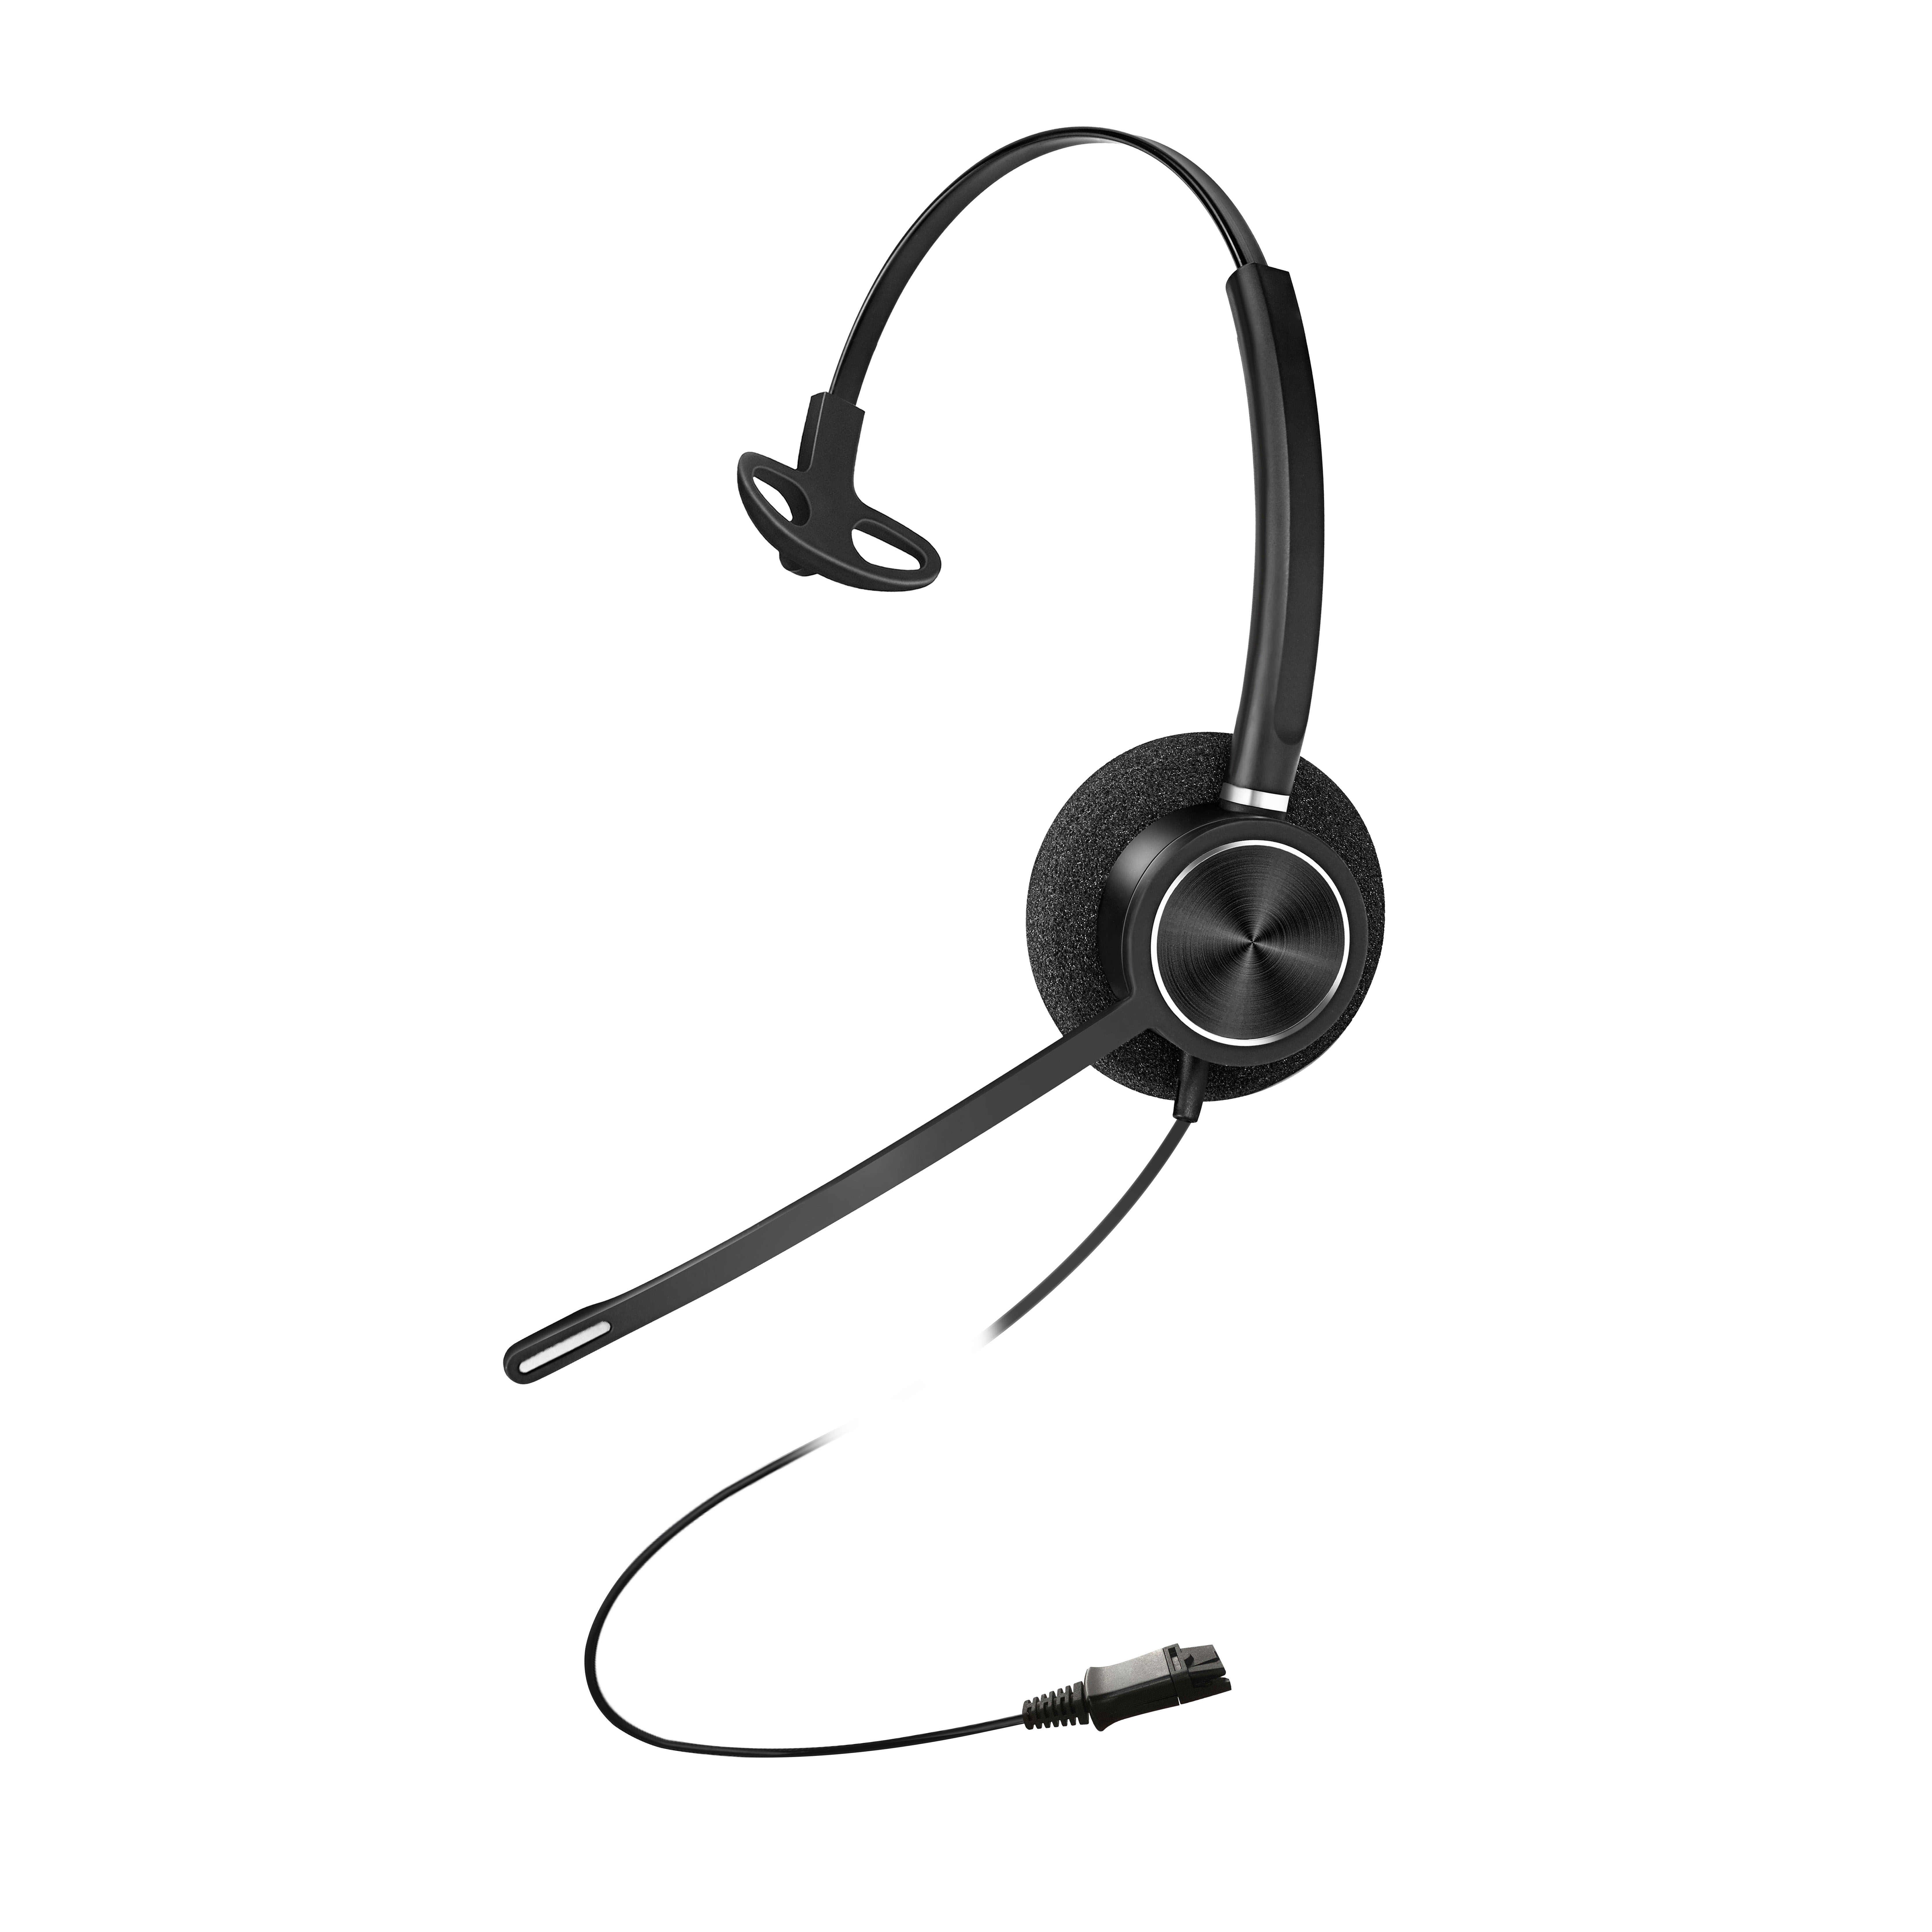 Preisgünstiges Mono-Headset für Contact Center